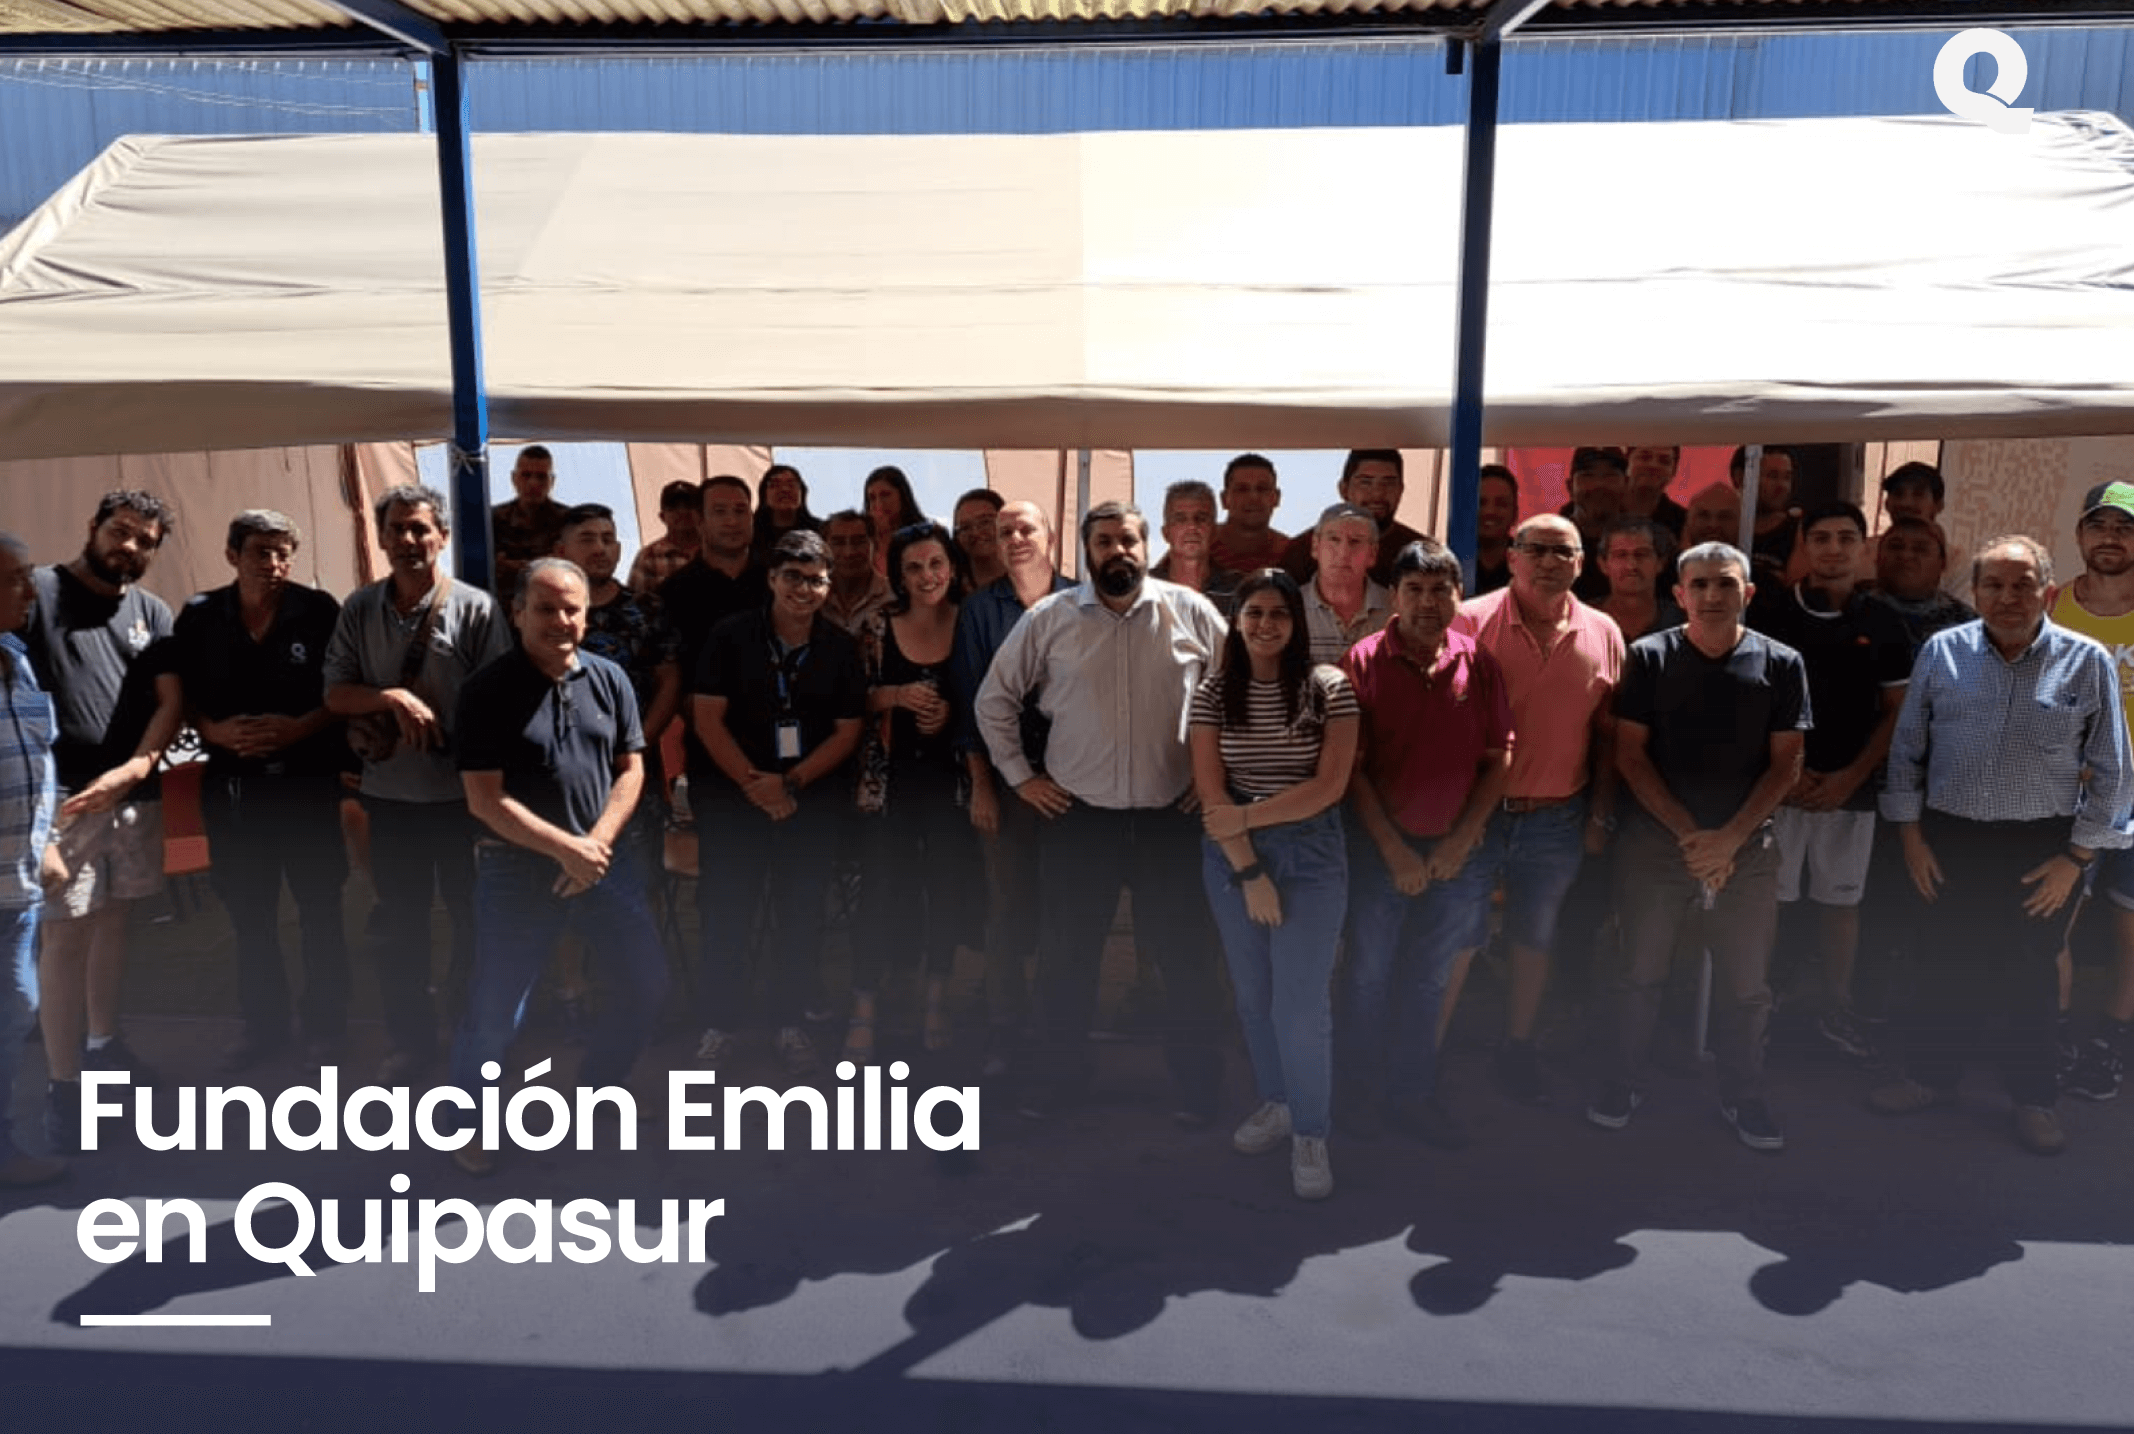 Emilia Foundation in Quipasur